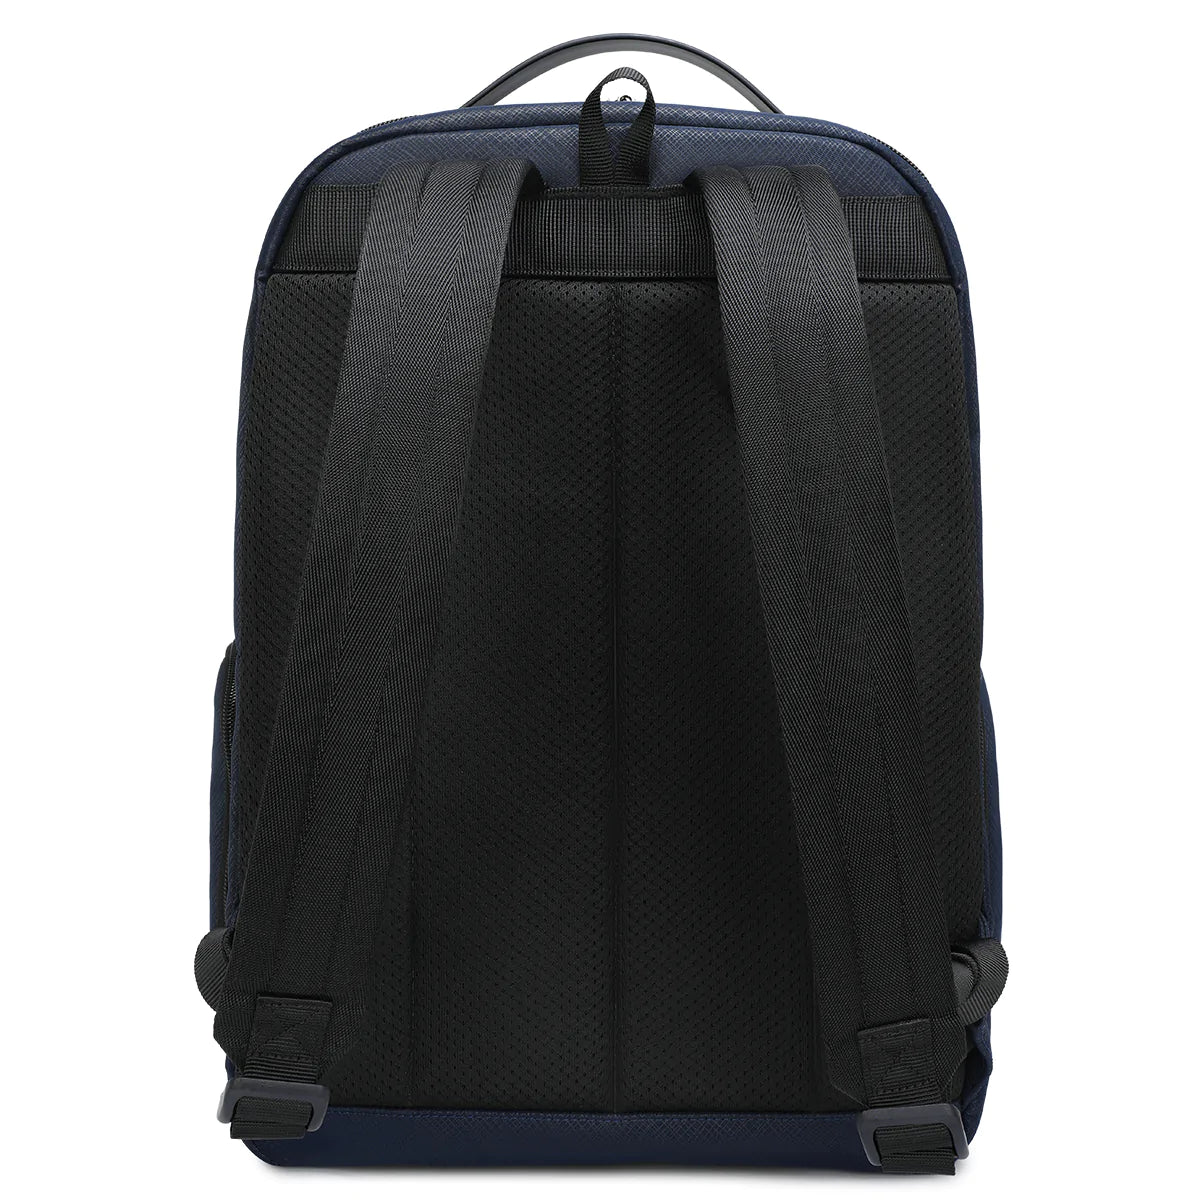 Tigernu TB-L Lead Top Laptop Backpack Blue